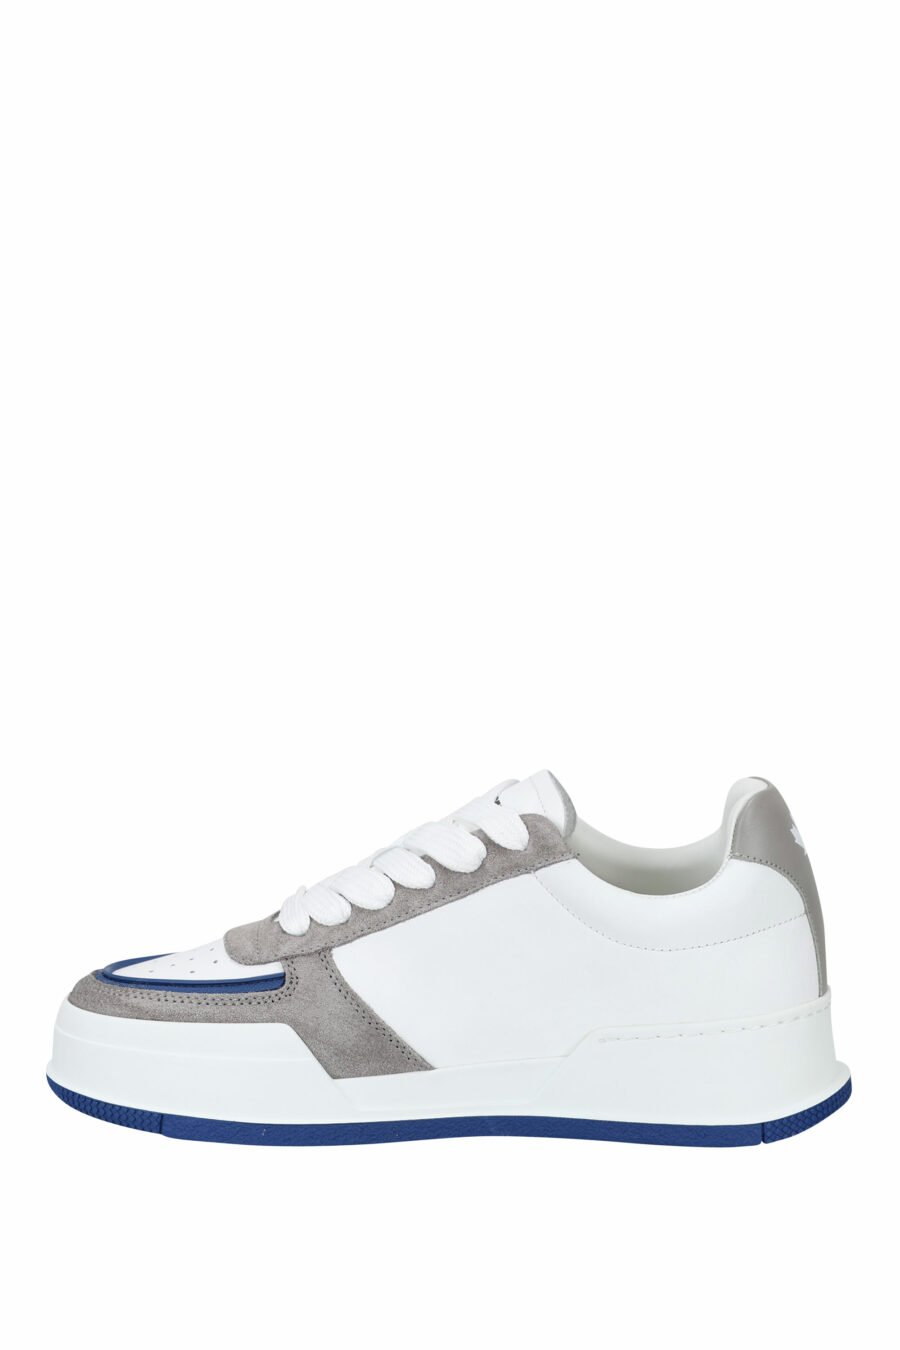 Zapatillas blancas mix con gris, azul y logo hoja roja - 8055777242216 2